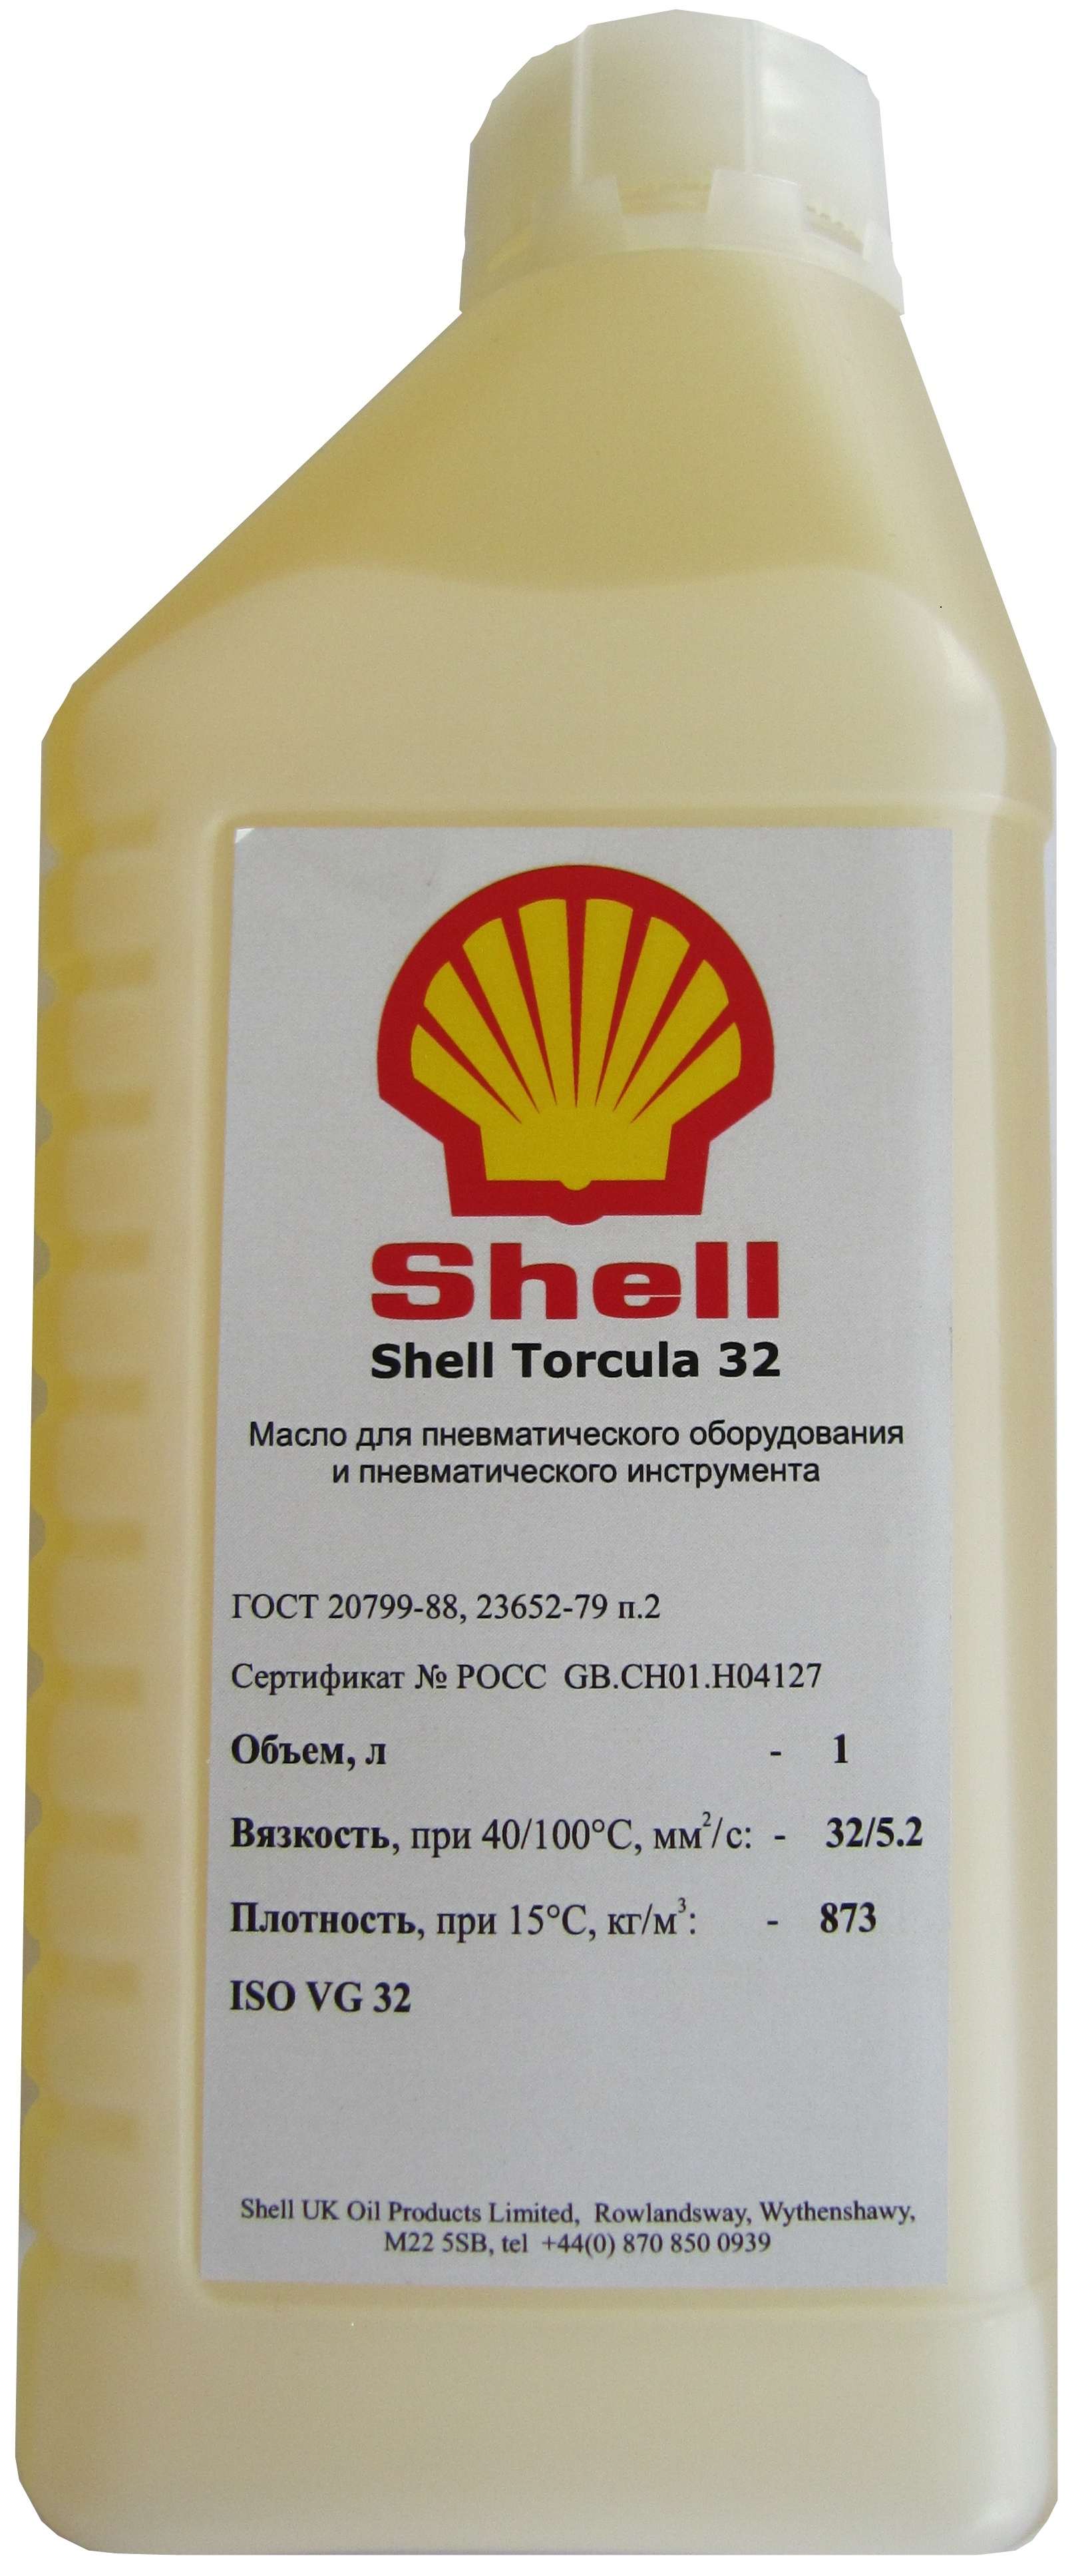 Пневматическое масло. SHELL Torcula 32 (ISO VG 32)